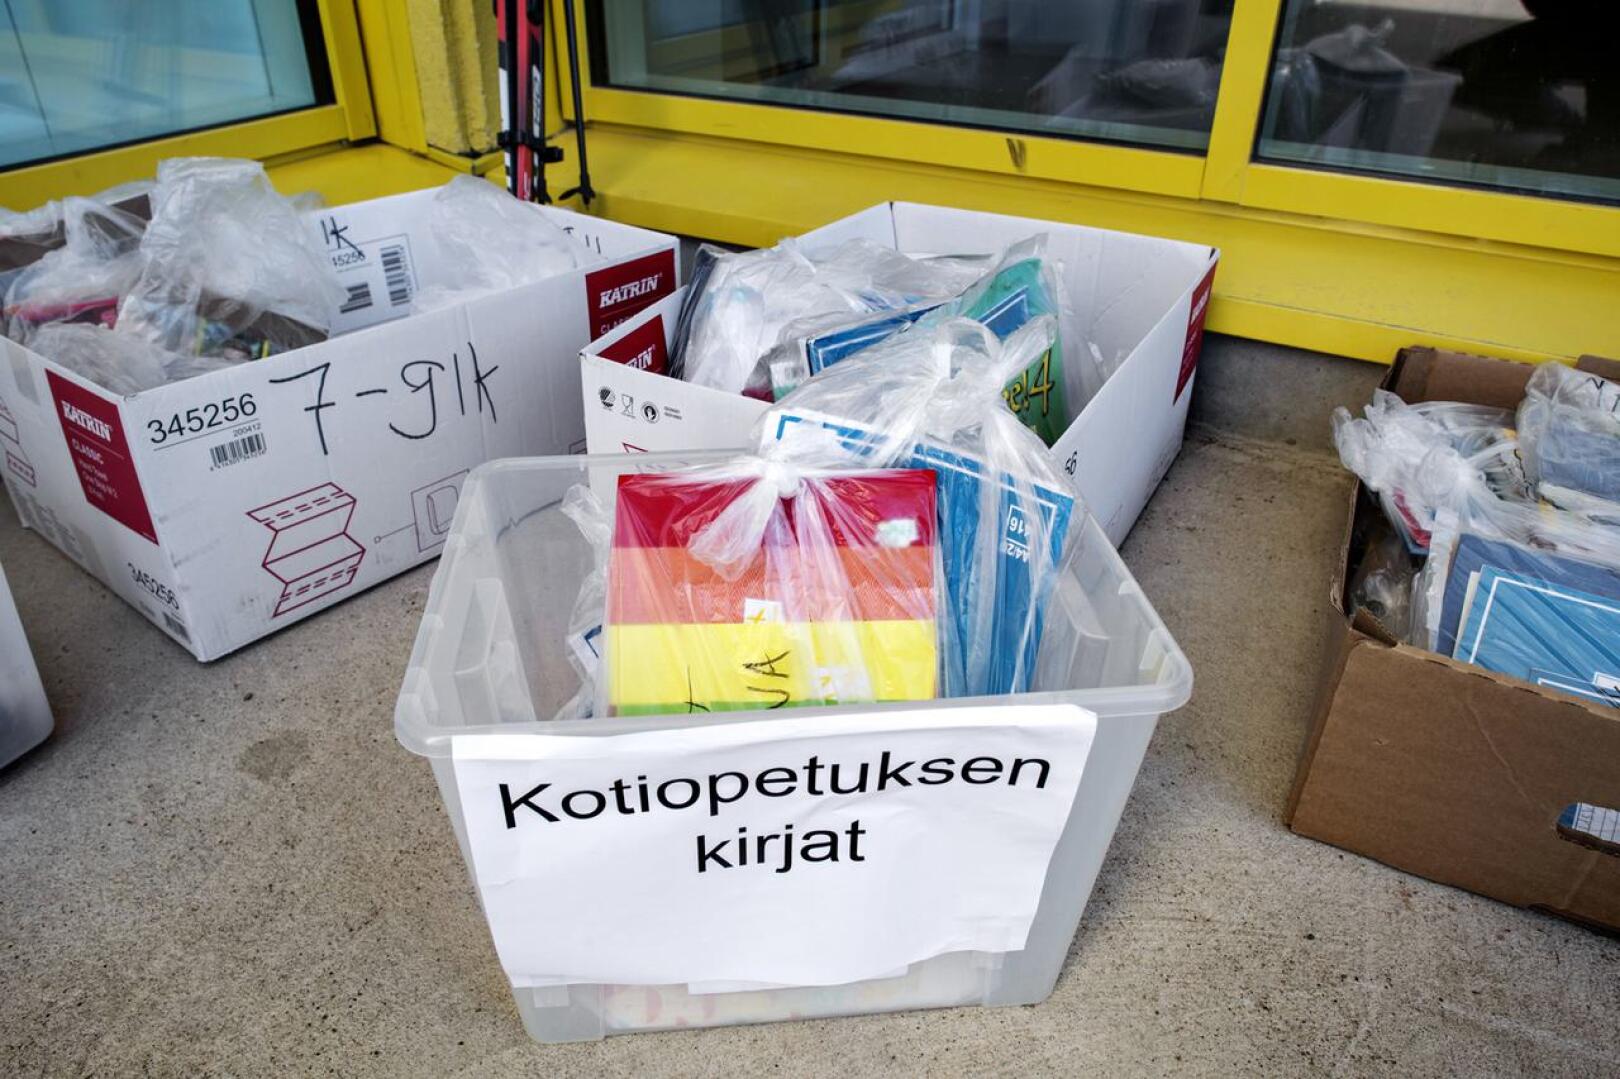 Oppilaat pystyivät noutamaan oppikirjat Torkinmäen koulun portailta.